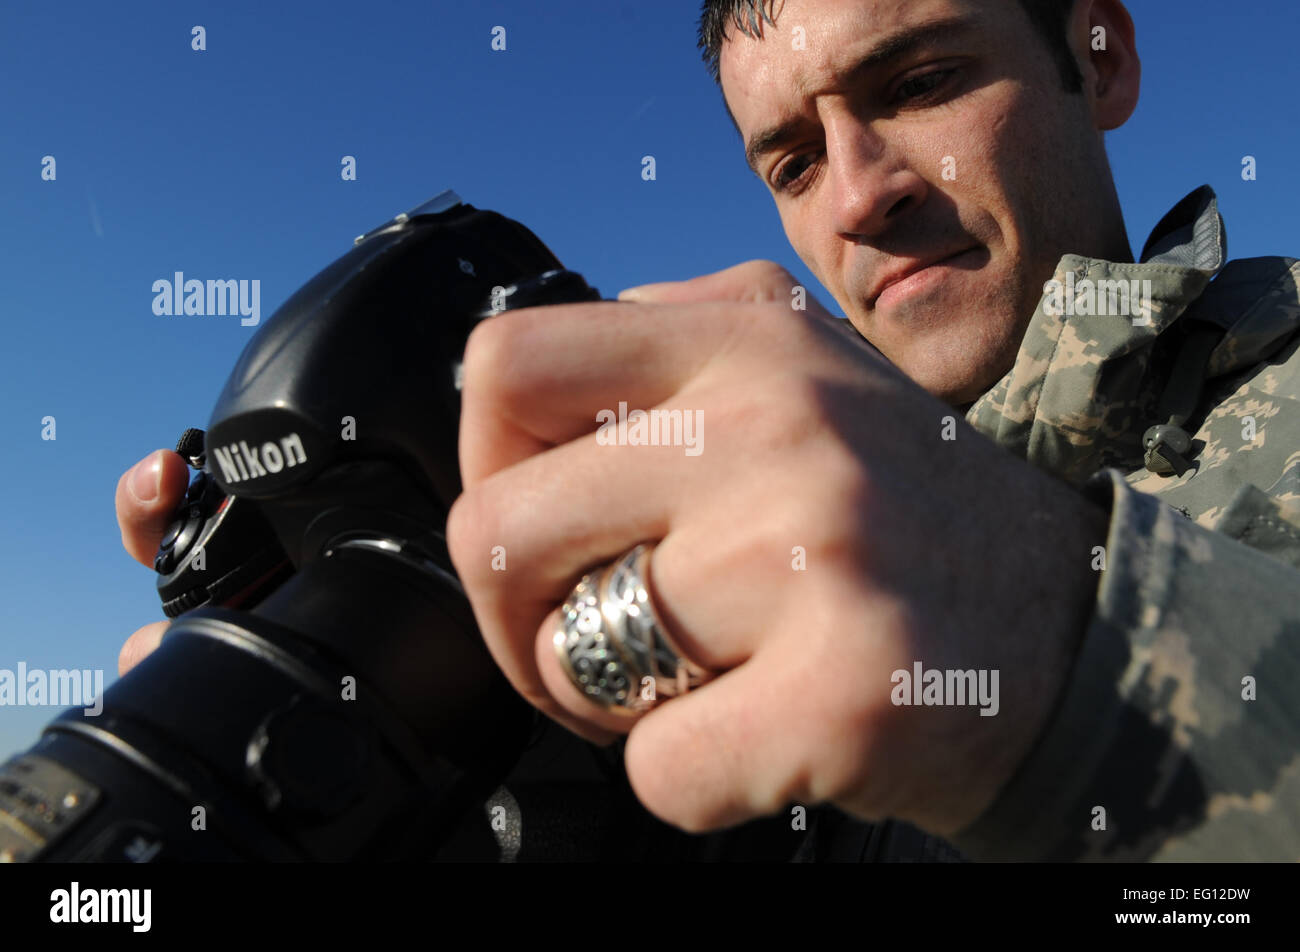 Senior Airman Daniel Owen, 1st Combat Kamera Squadron, prüft seine Bilder der c-17 Flugzeuge Rollen von Charleston Air Force Base, S.C., am 16. Dezember 2009.  C-17 Flugzeuge aus CAFB, S.C., leiten eine strategische Brigade Airdrop Übung über Norden Hilfs Flugplatz in der Nähe von Northern, S.C., 16. Dezember 2009, zeigt die globale Projektion des US-Airpower. In der Luft Soldaten vom 2-319th Airborne Field Artillery, 82. US-Luftlandedivision, Fort Bragg, N.C., waren Luft sank in der Bewegung zusammen mit Cargo-Paletten zu simulieren, die Beschlagnahme von einem entfernten Flugplatz bietet eine gemeinsame Ausbildung opportun Stockfoto